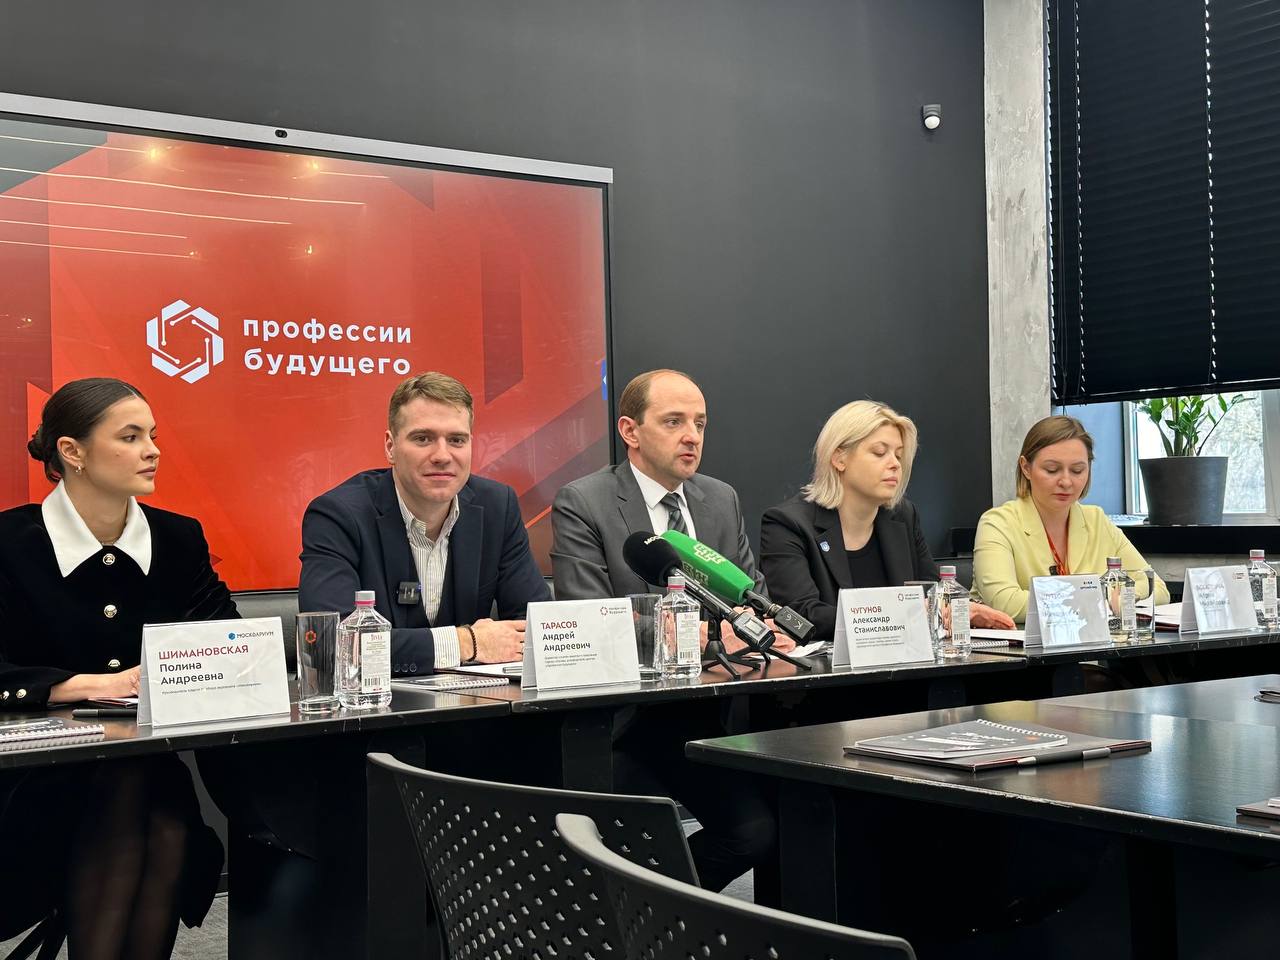 Региональный этап Всероссийской ярмарки трудоустройства в Москве: пресс-конференция состоялась в столице